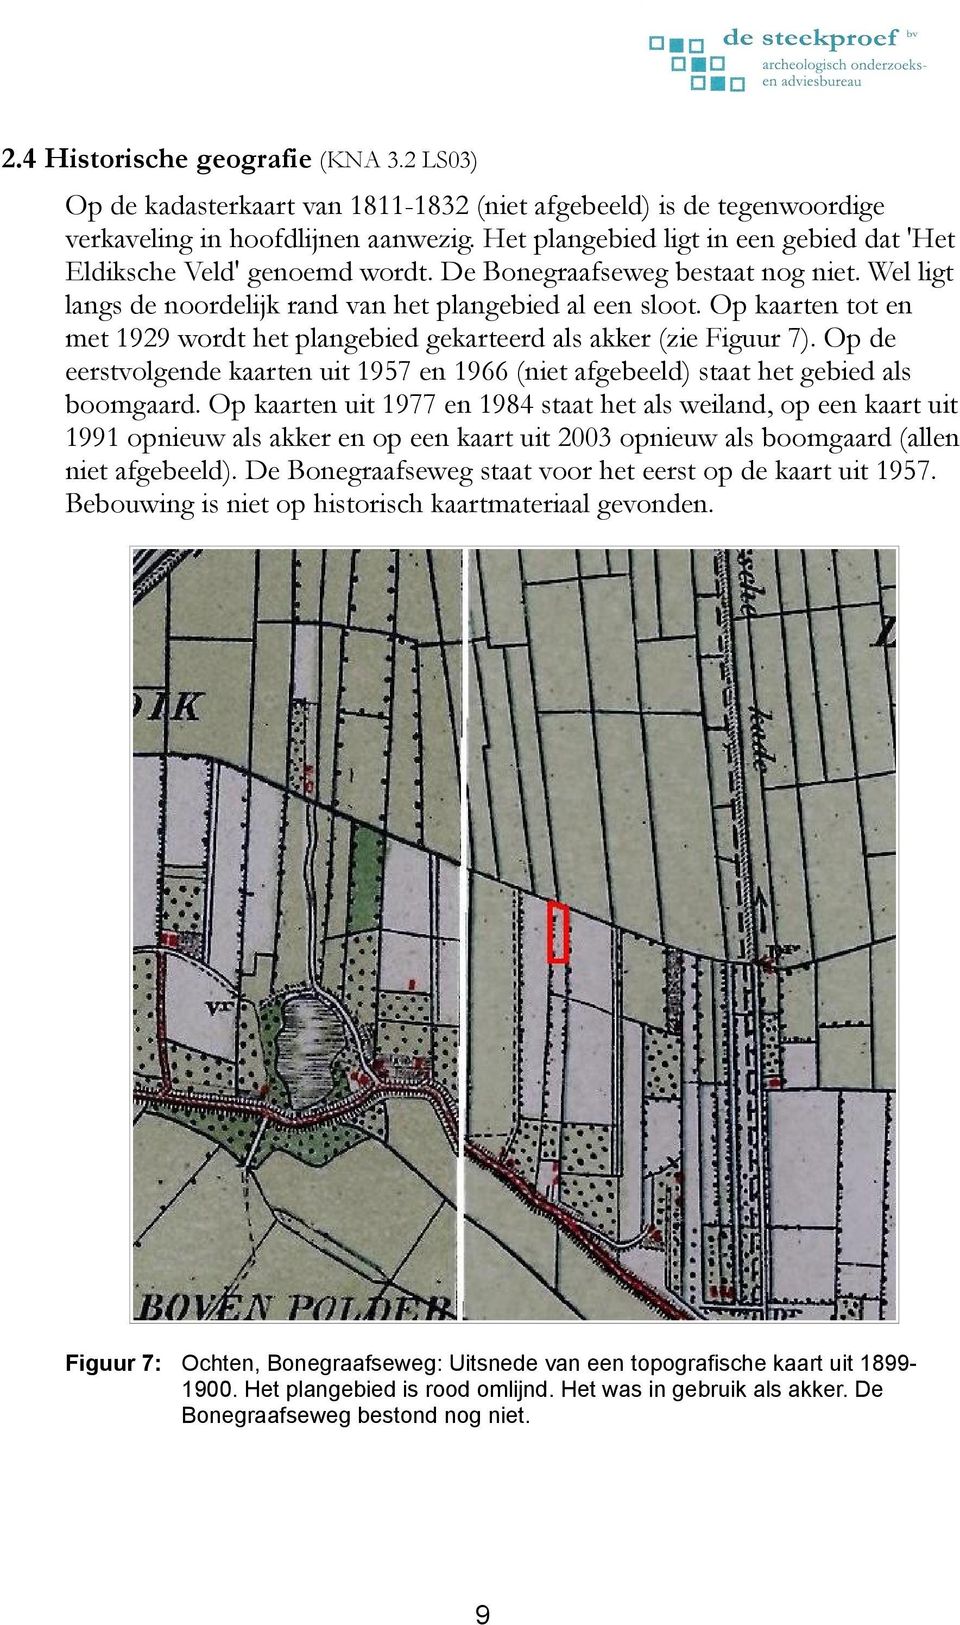 Op kaarten tot en met 1929 wordt het plangebied gekarteerd als akker (zie Figuur 7). Op de eerstvolgende kaarten uit 1957 en 1966 (niet afgebeeld) staat het gebied als boomgaard.